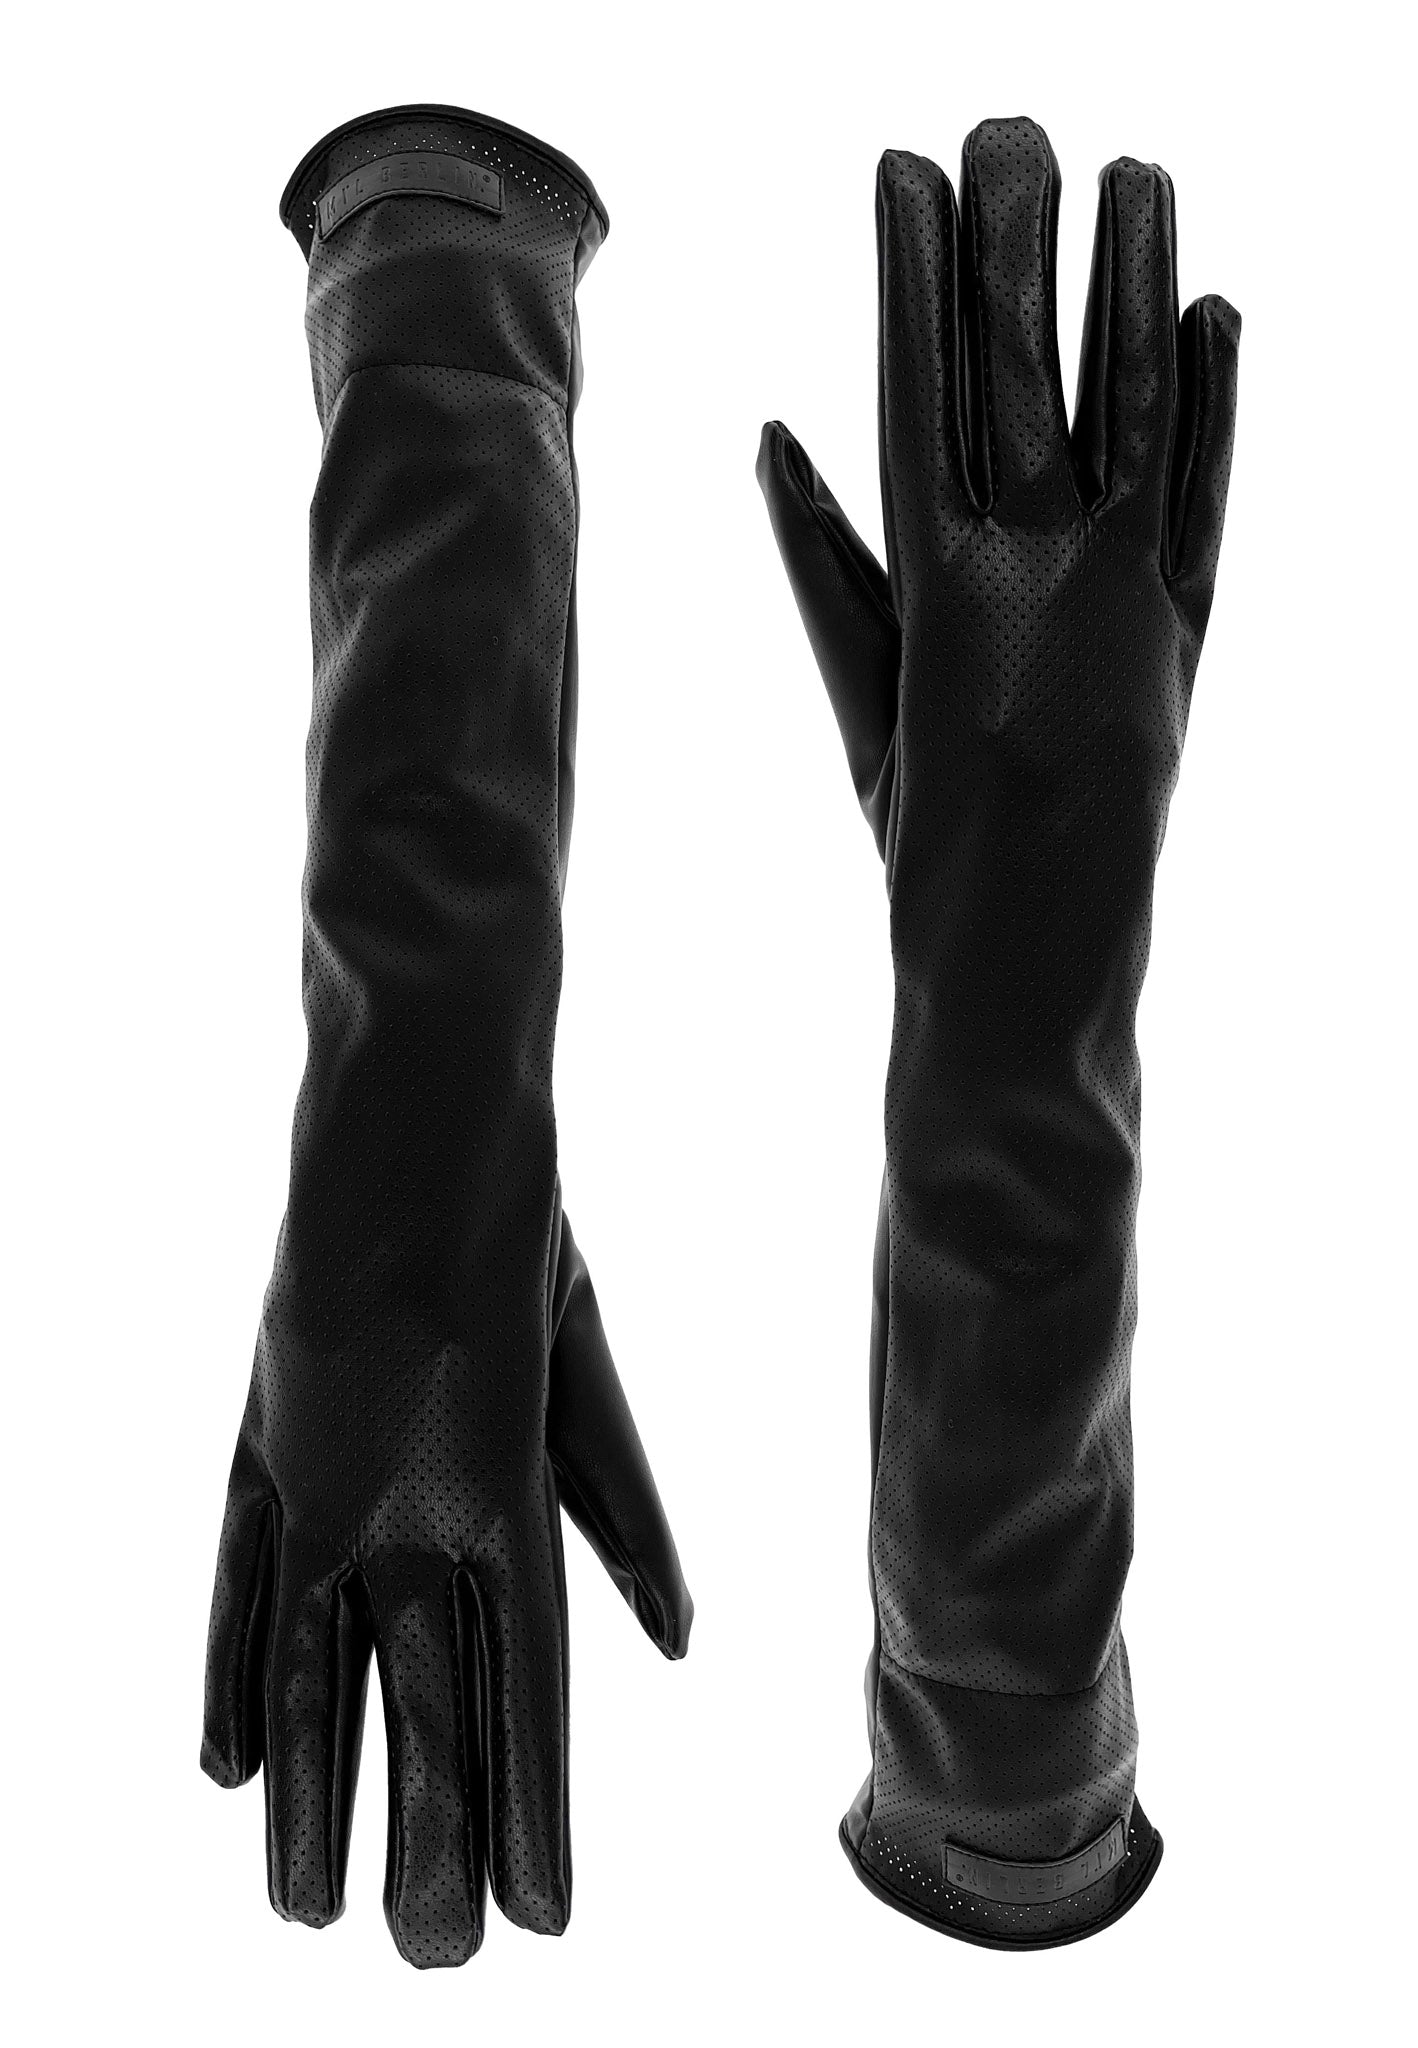 Long Leather Gloves With Elegenat Hole Pattern - MYL BERLIN - 4260654112825